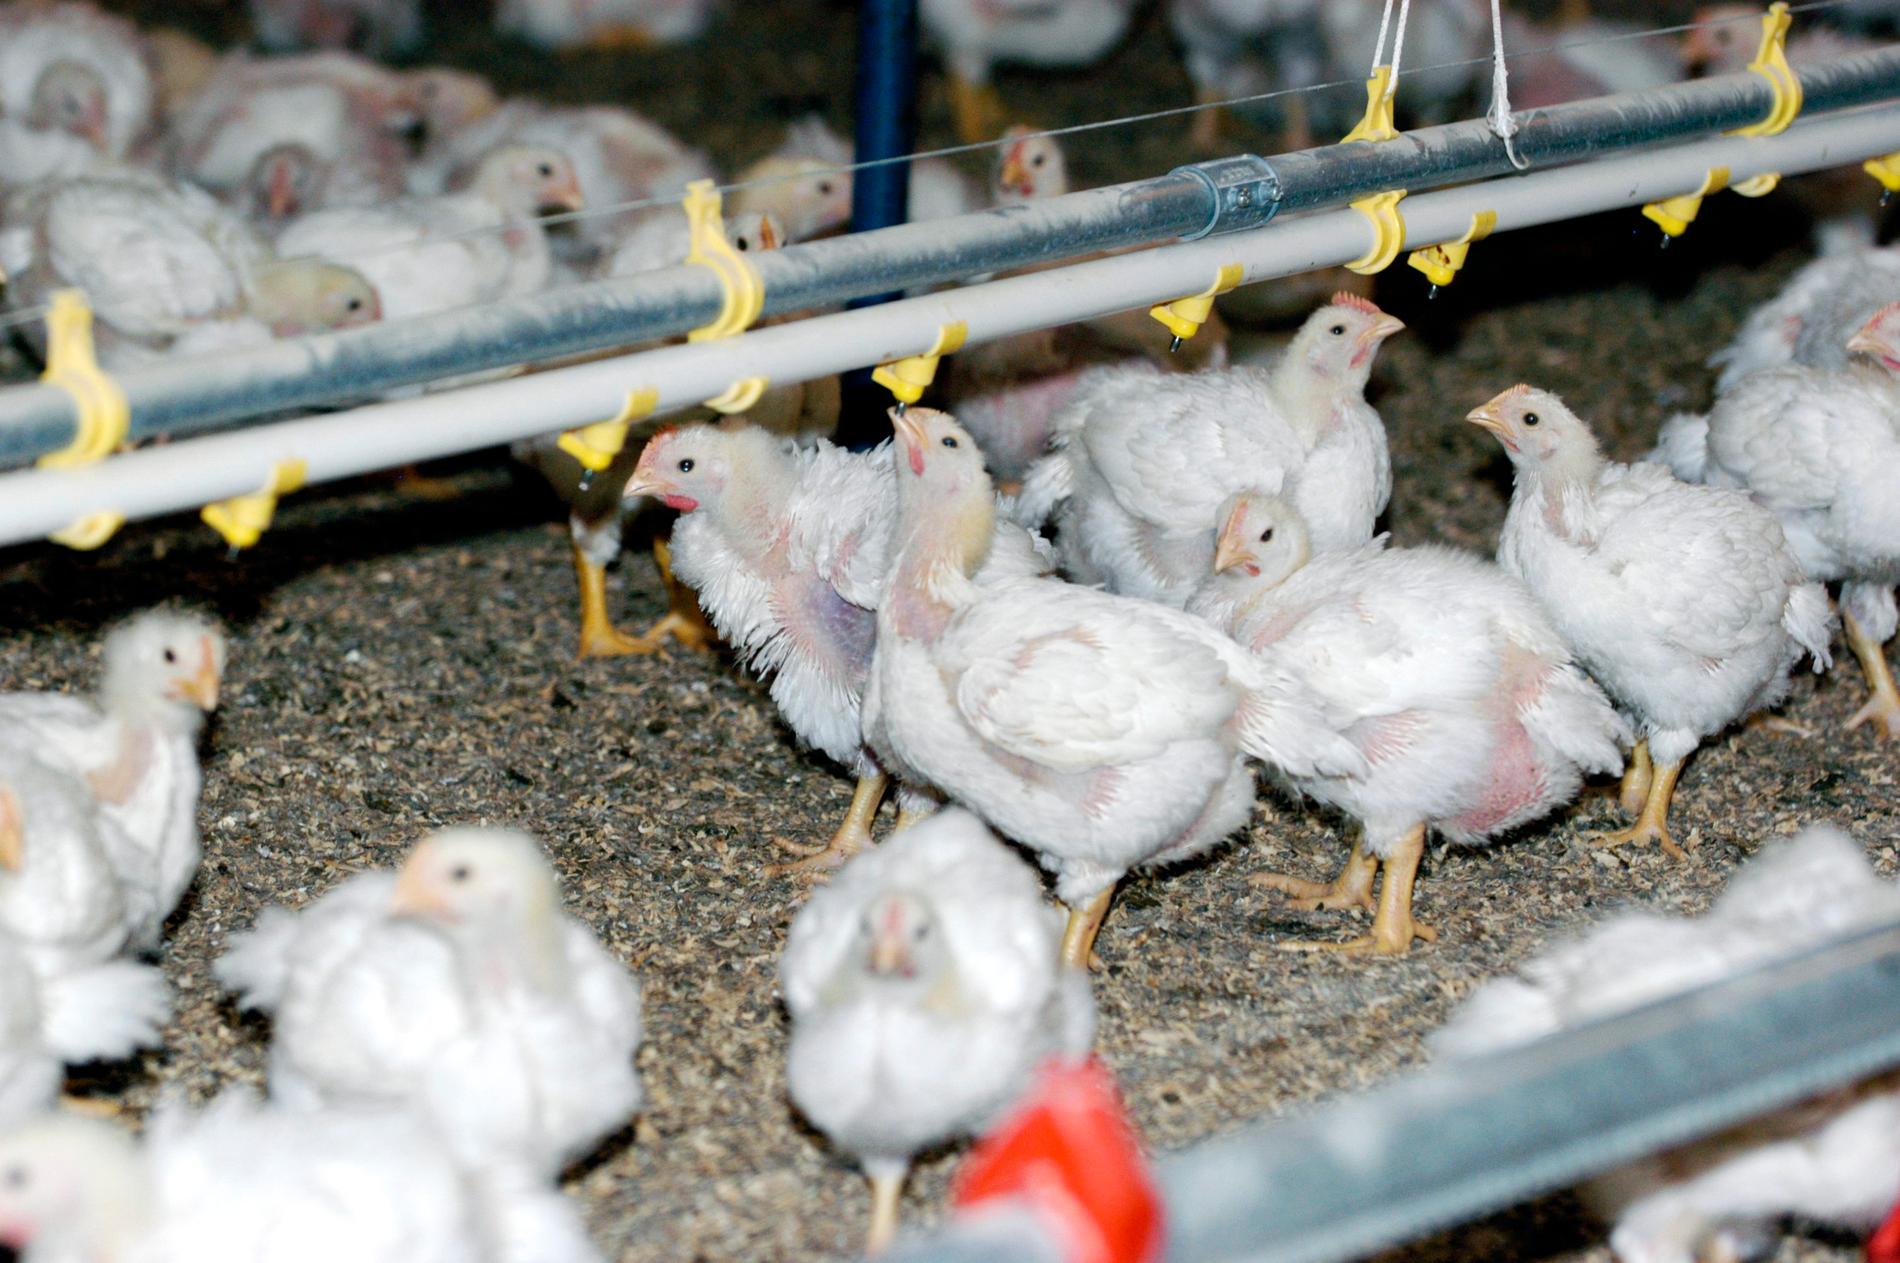 Tusentals kycklingar skadas inför slakt, larmar veterinärer. Arkivbild.